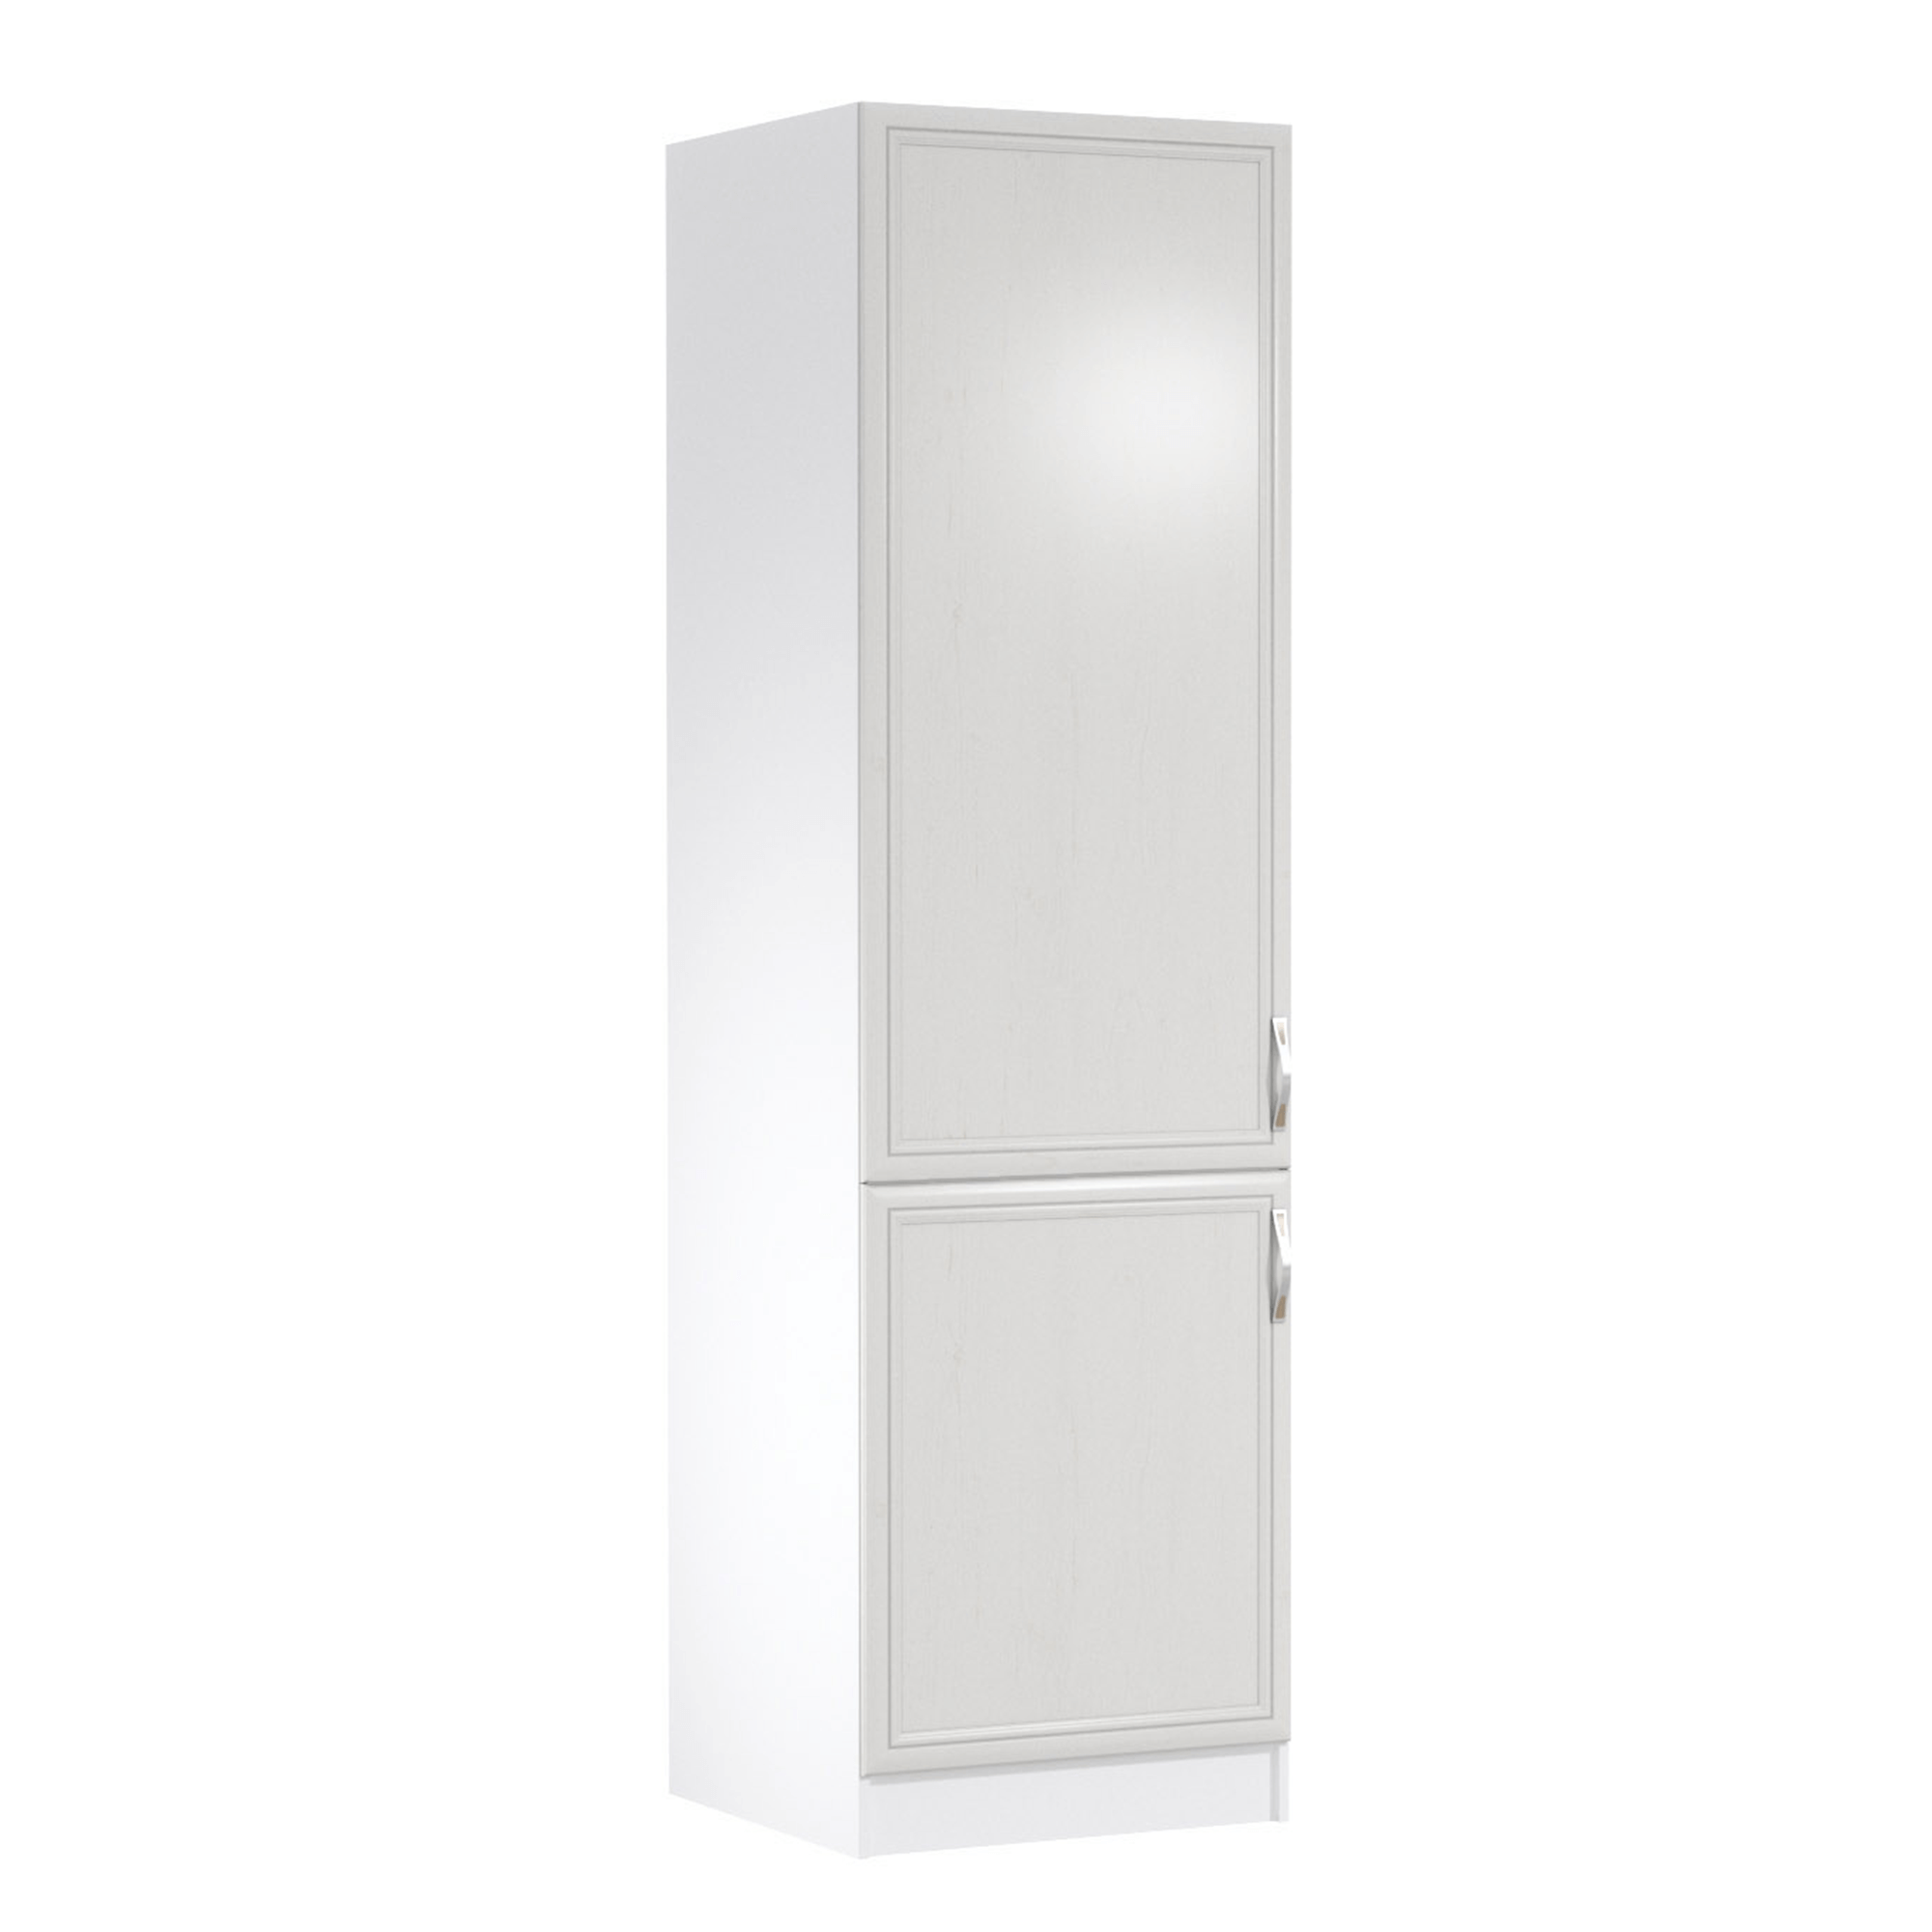 Dulap pentru frigider încorporat D60ZL, model stânga, alb/pin Andersen, SICILIA